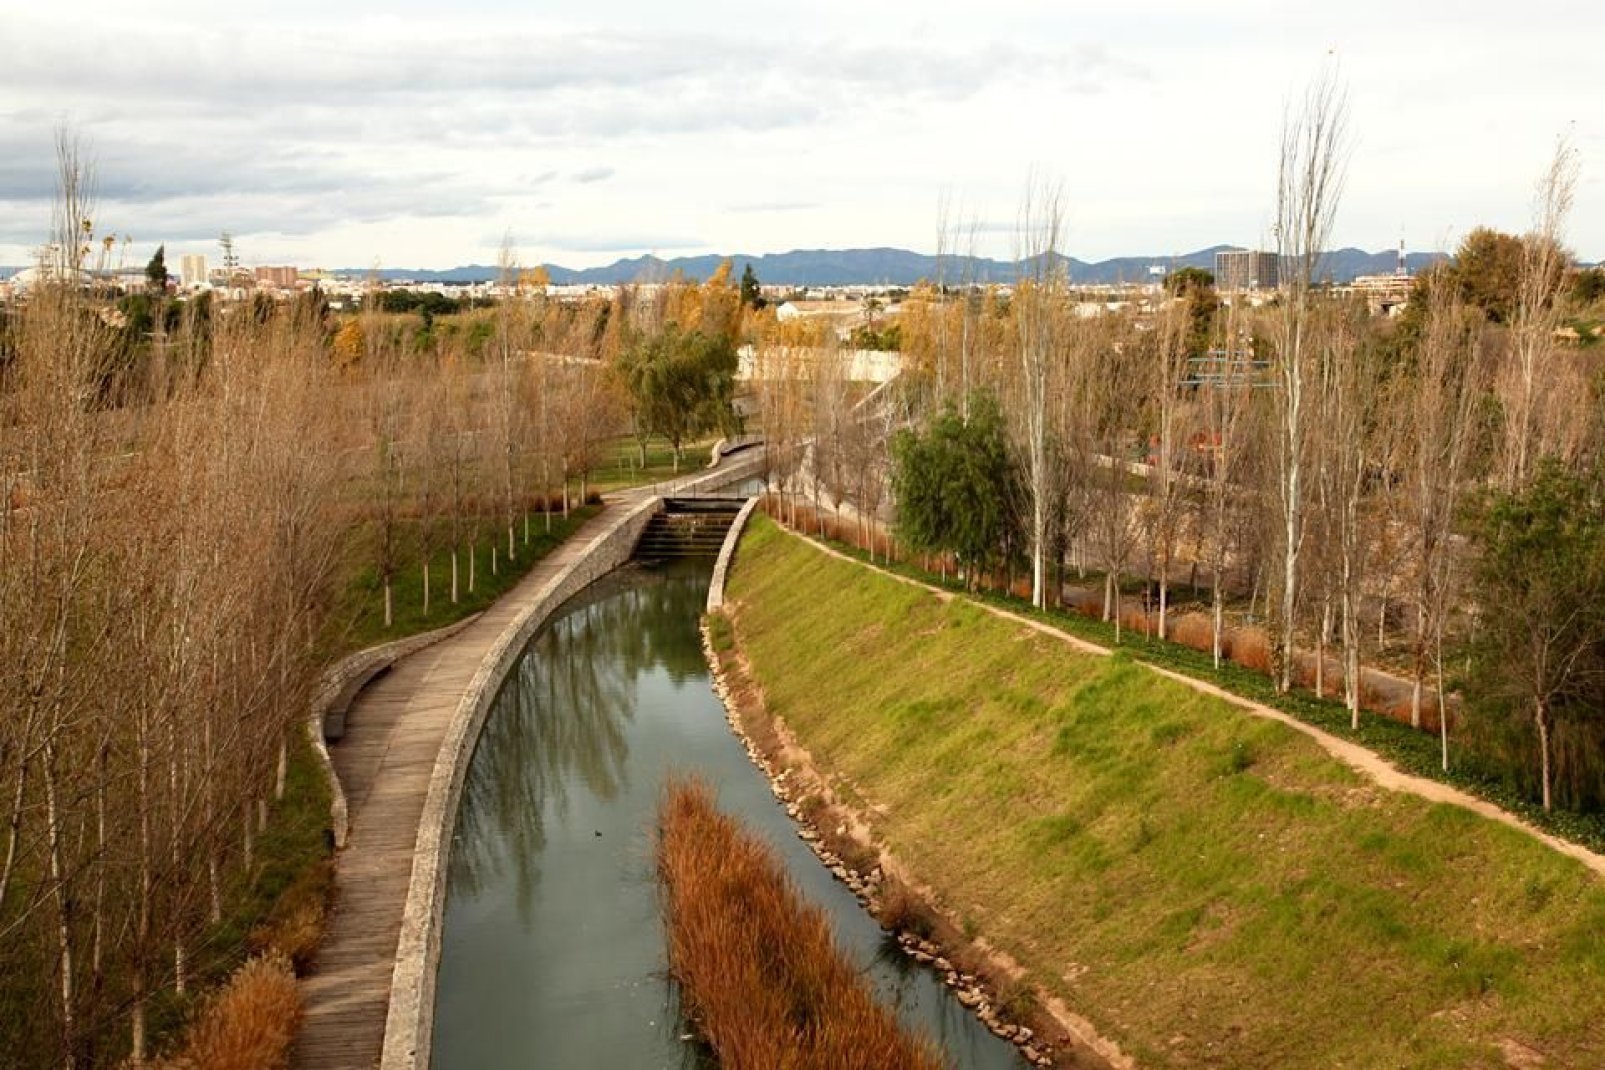 Los jardines del Turia, denominados «el río» por los habitantes, es un lugar muy apreciado por los valencianos para pasear tanto en bici como a pie.